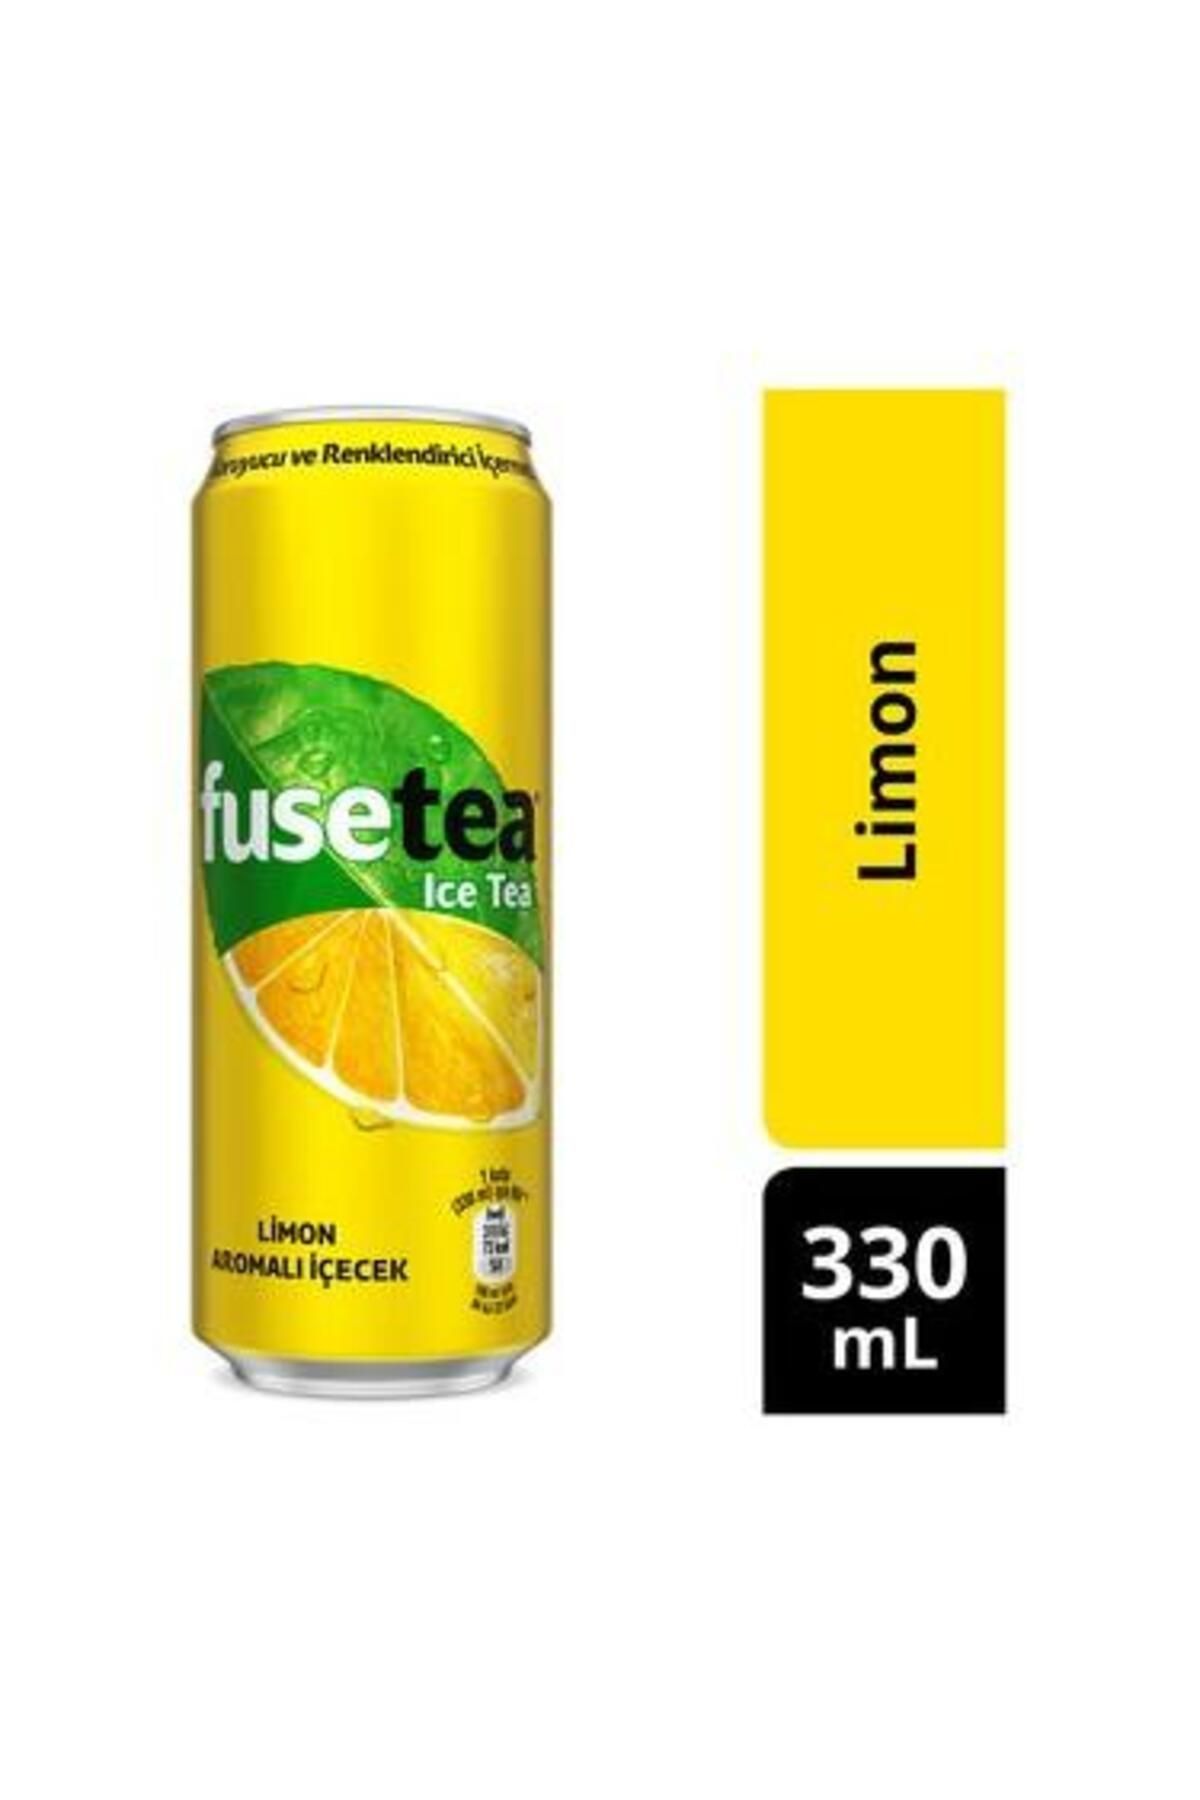 Fuse Tea Limon Kutu 330 Ml.